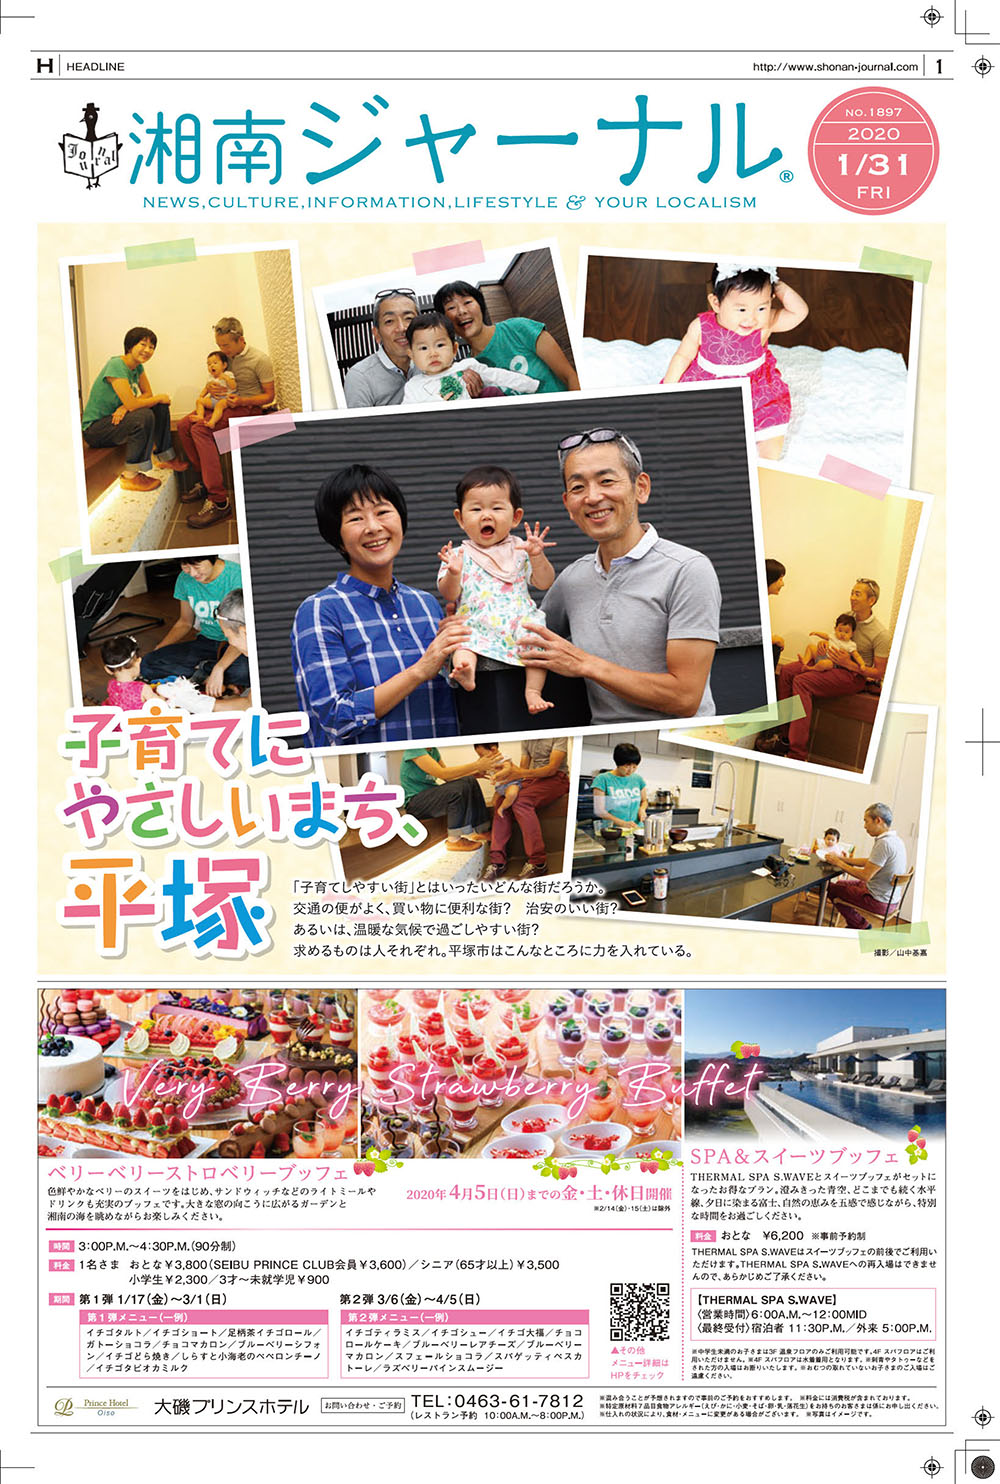 年1月31日 地域情報紙 湘南ジャーナルのウェブサイト